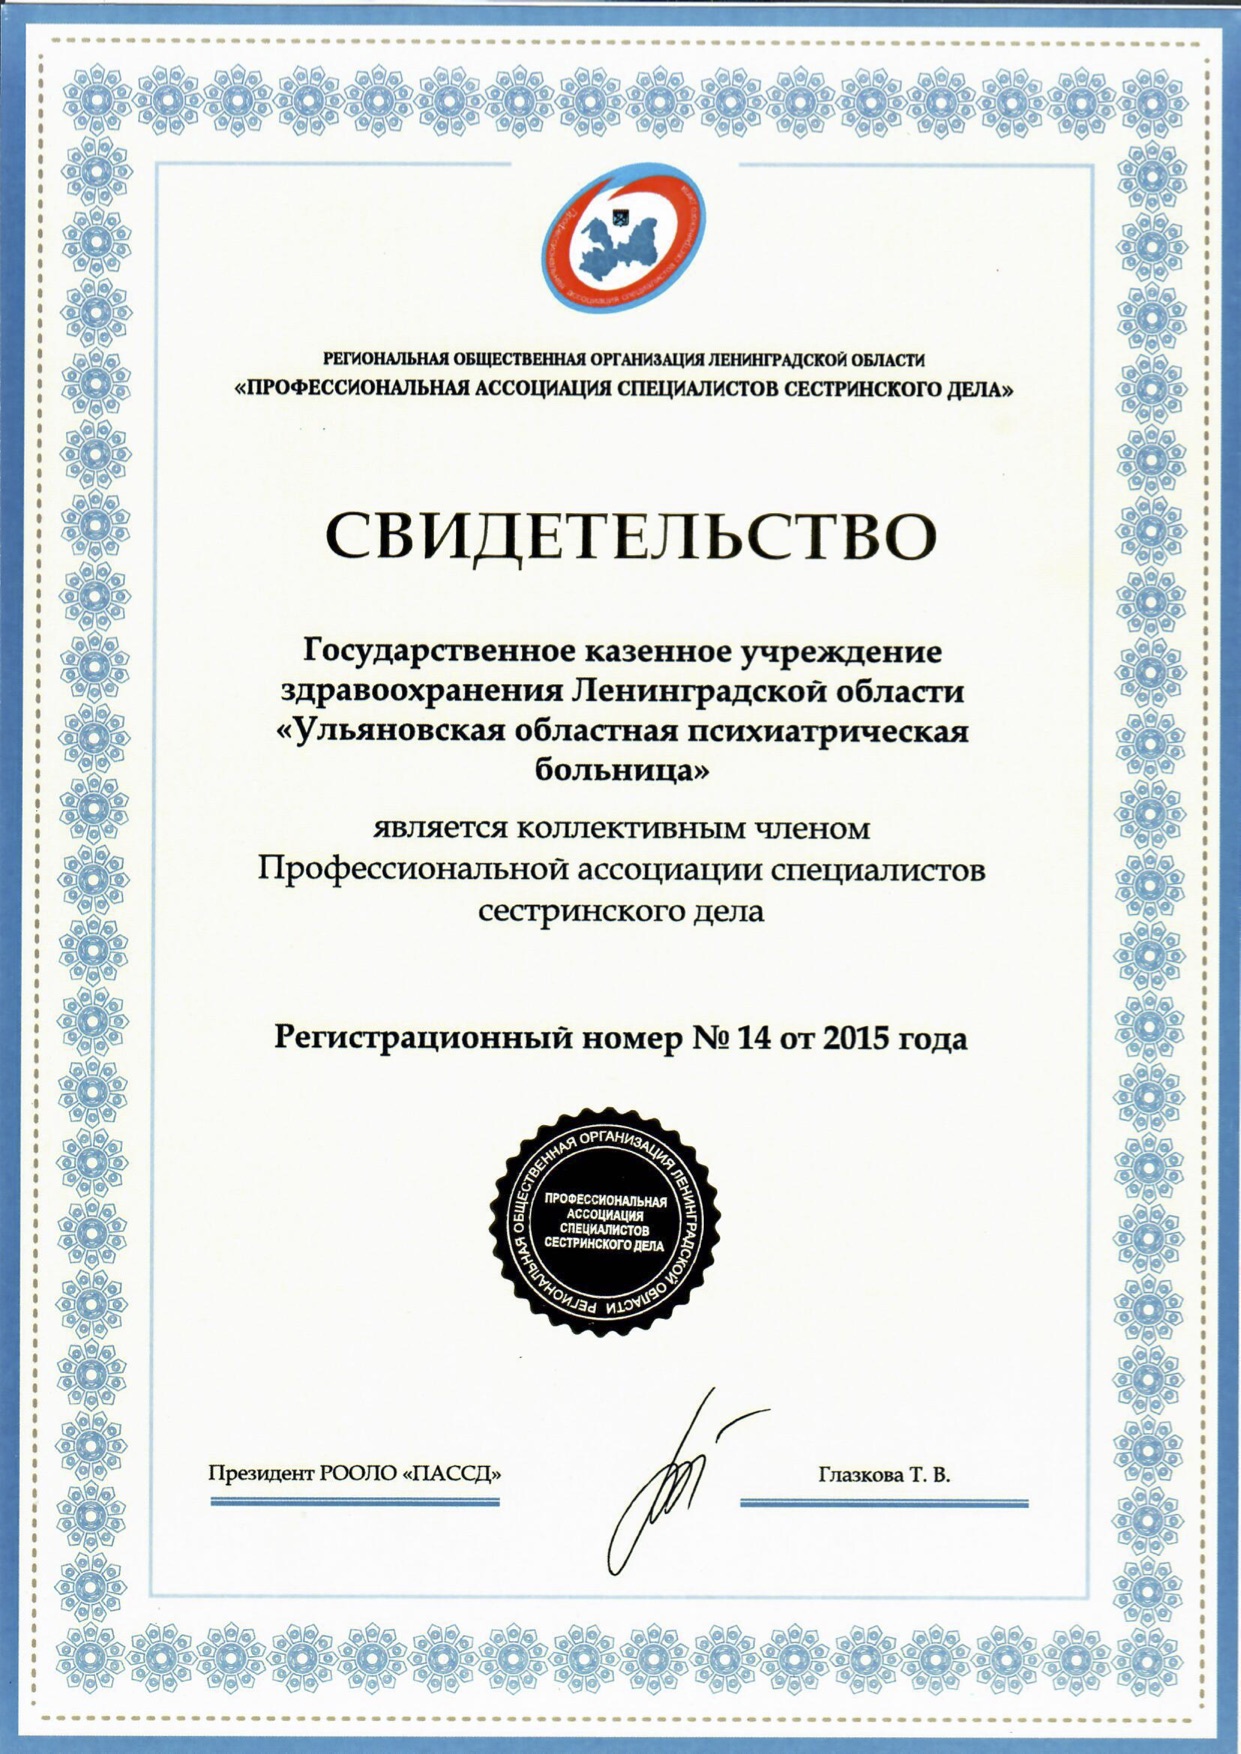 ЛОГКУЗ "Ульяновская психиатрическая больница": сертификат